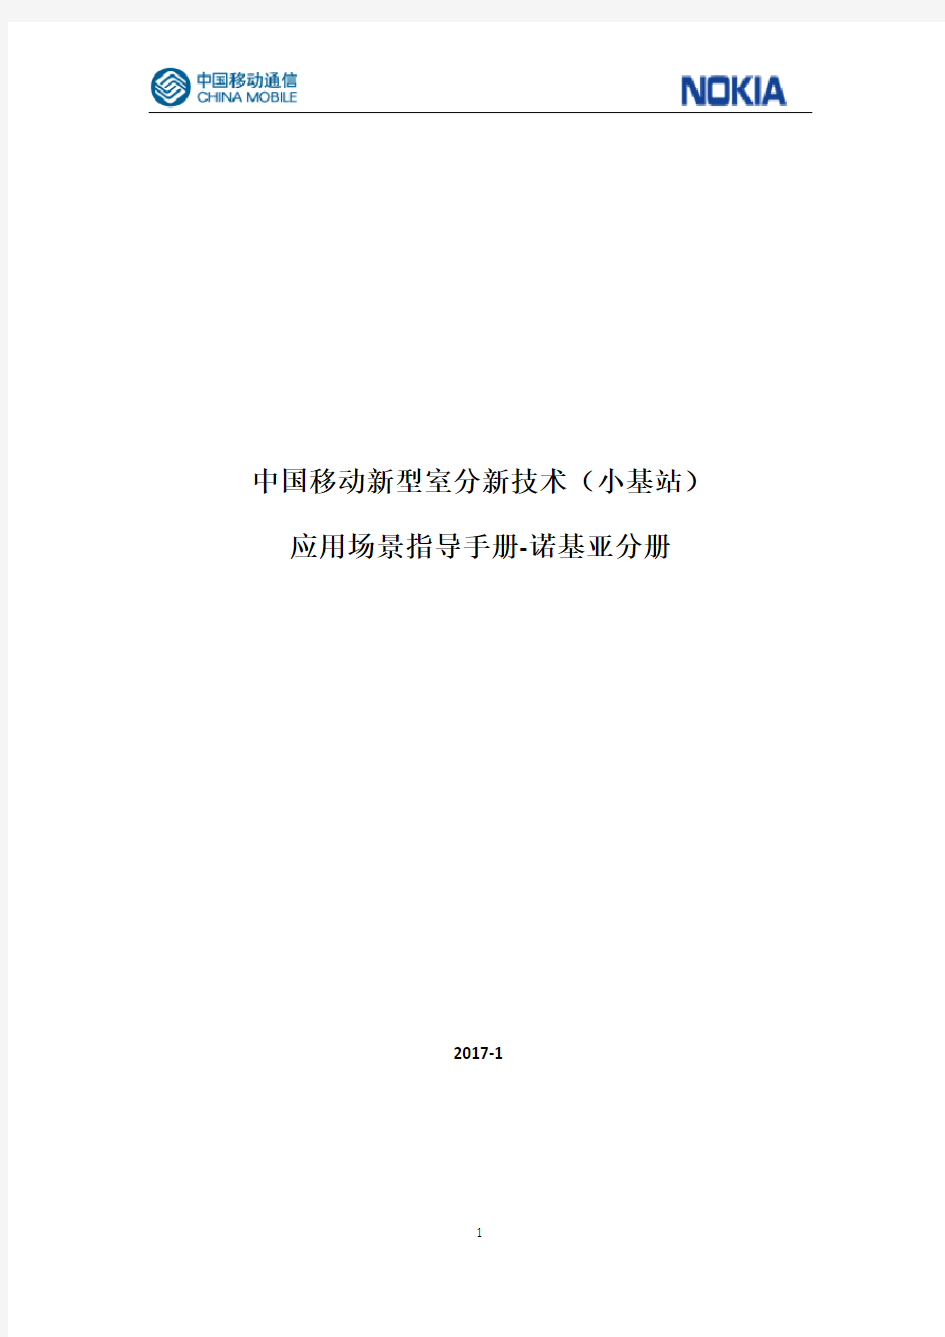 中国移动新型室分新技术(小基站)应用场景指导手册(诺基亚)V3.0